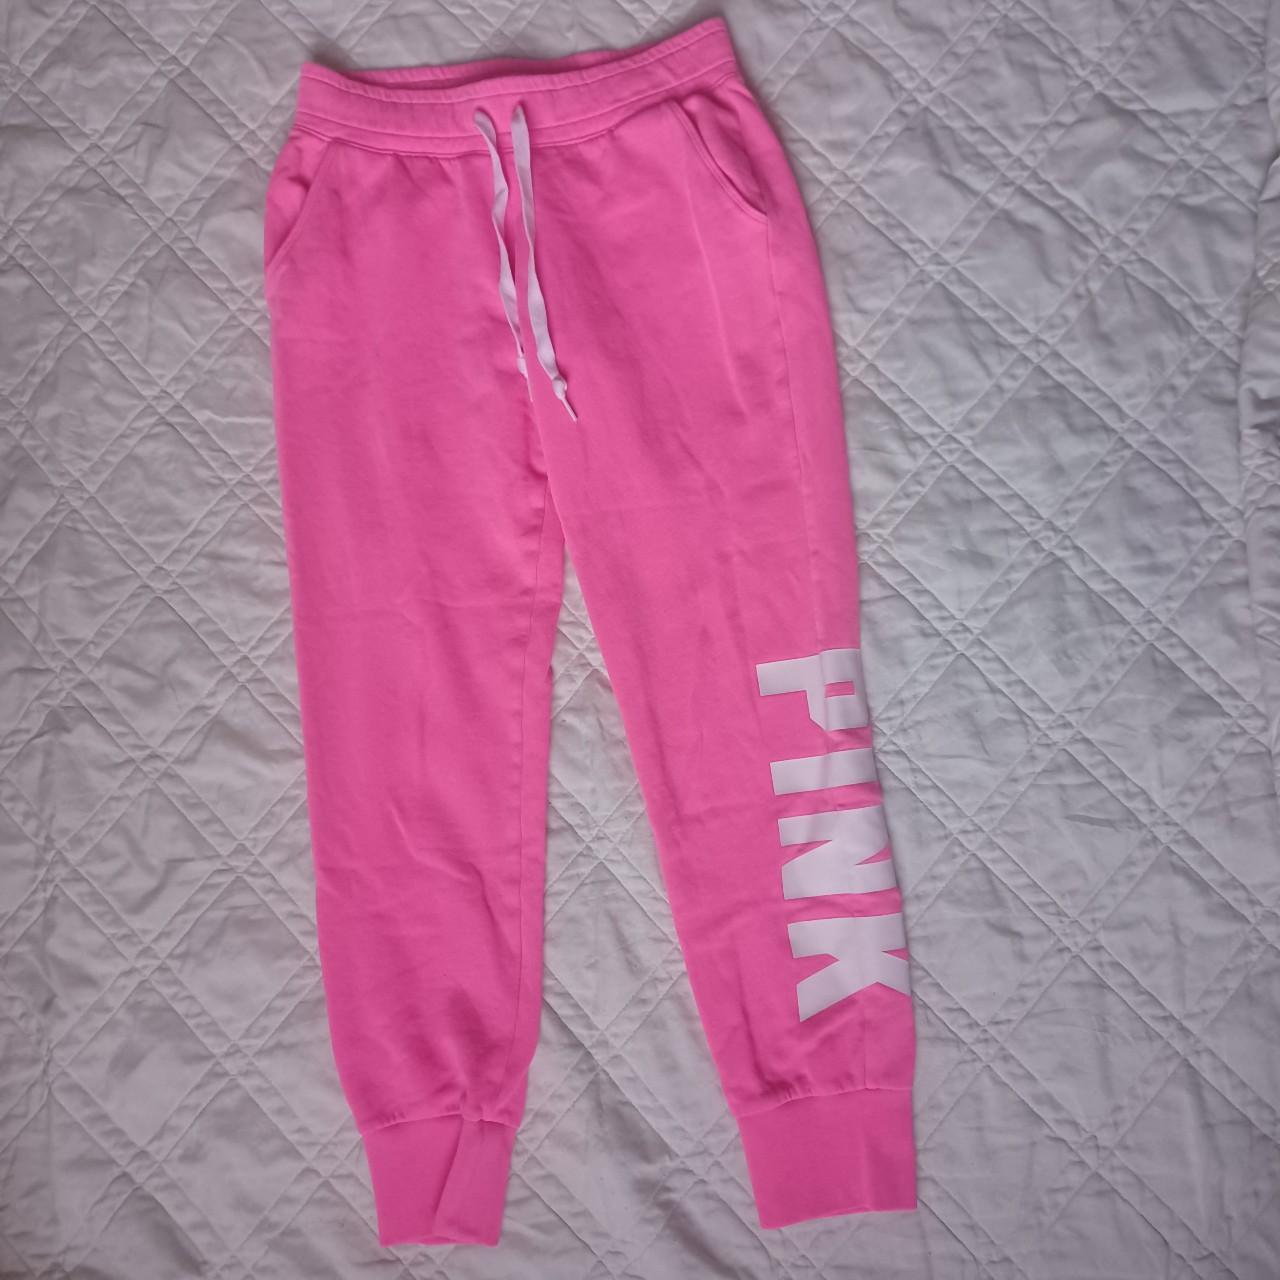 Trashyy2k Pink Sweatpants, only worn a few times, no - Depop